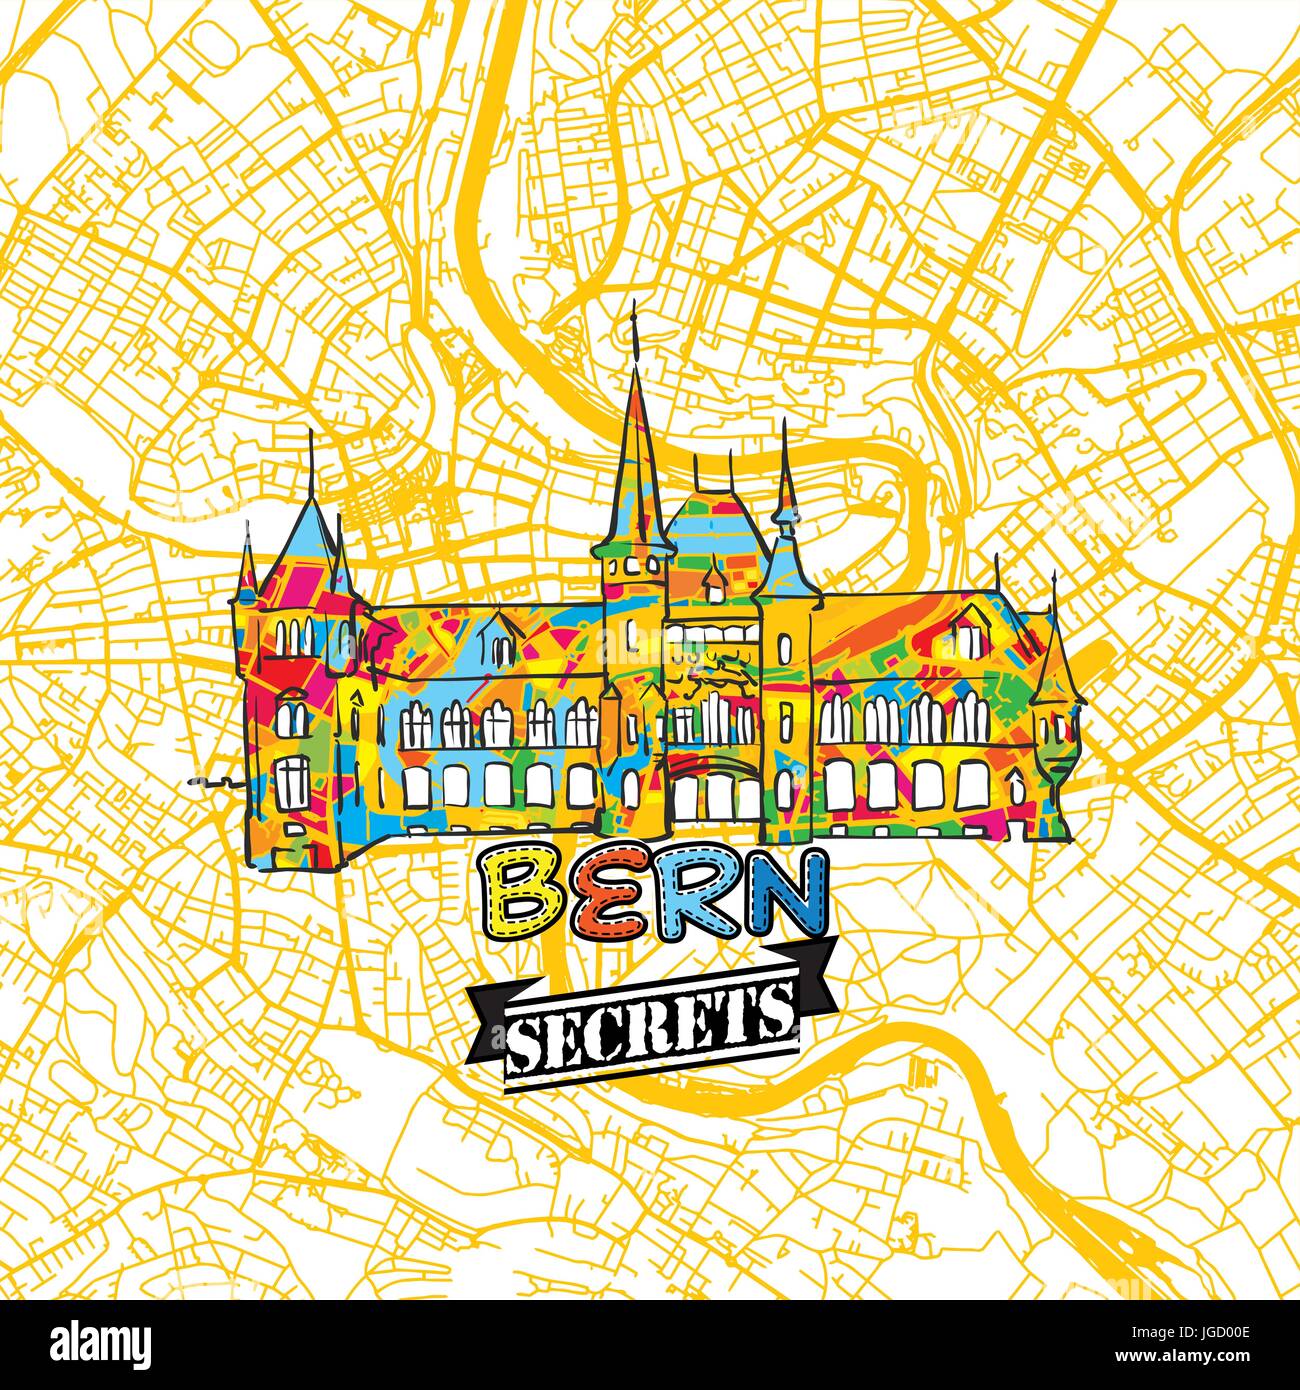 Bern Reisen Geheimnisse Art Map für die Zuordnung von Experten und Reiseführer. Handgemachte Stadt Logo, Typo-Abzeichen und Hand gezeichnete Vektorbild auf Top sind gruppiert und m Stock Vektor